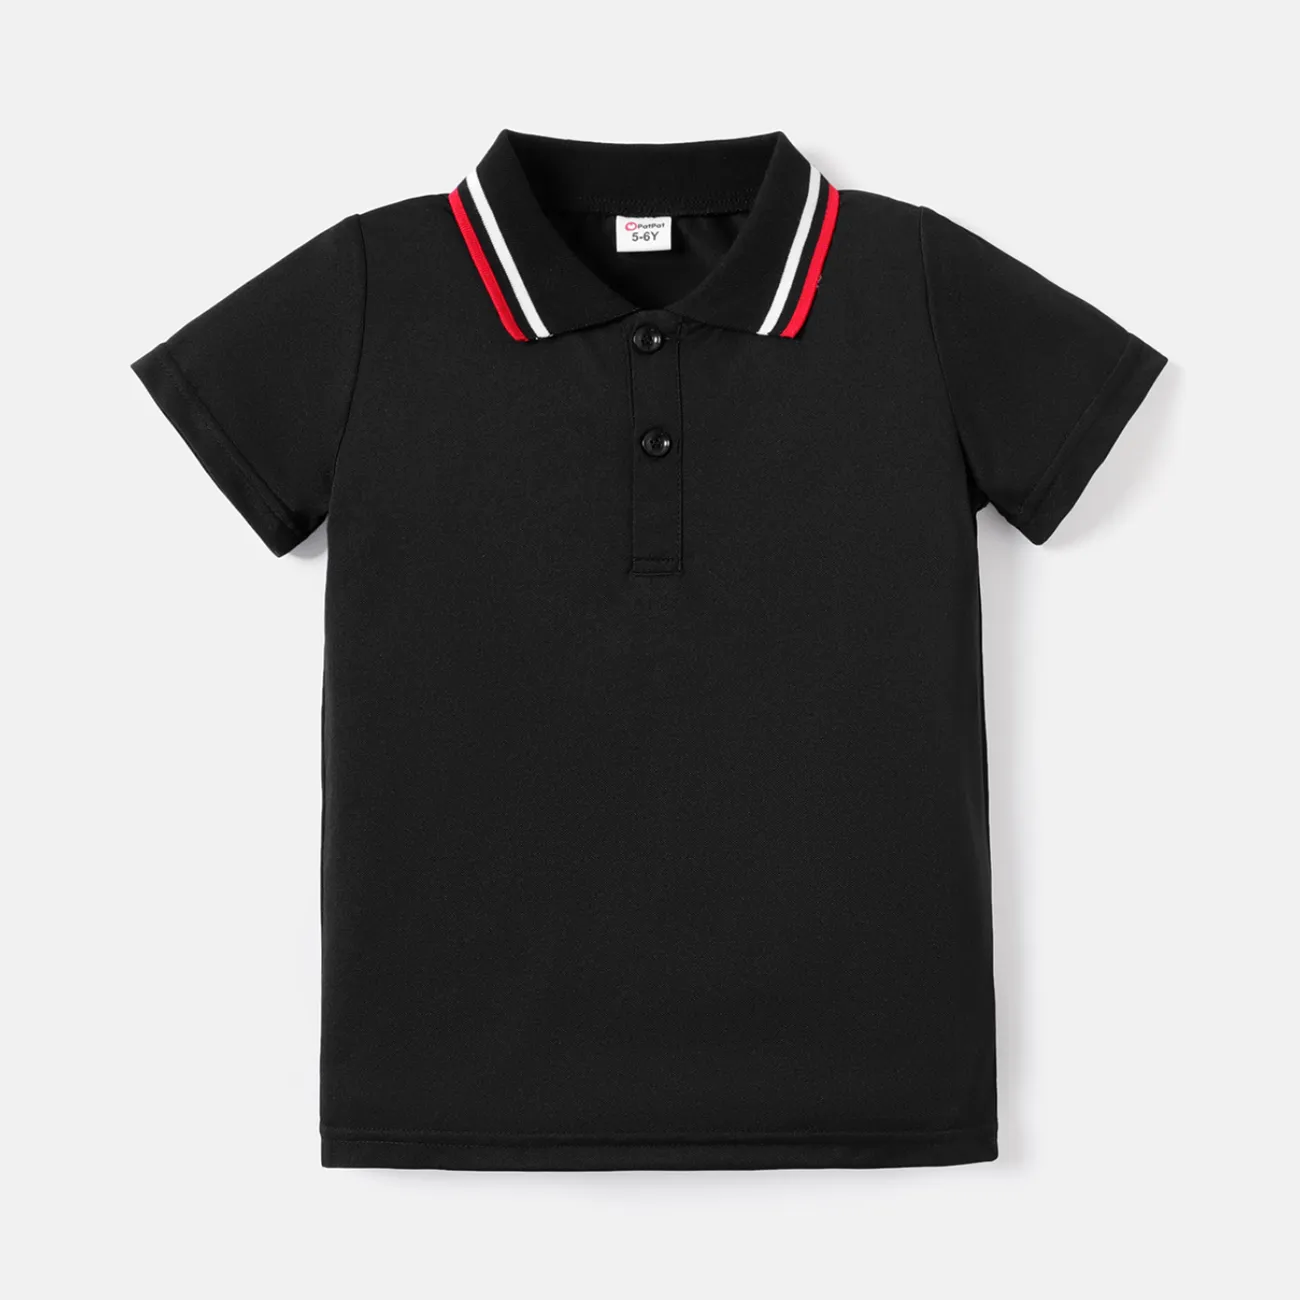 Kid Boy Solid Color Short-sleeve Pique Polo Tee Black big image 1